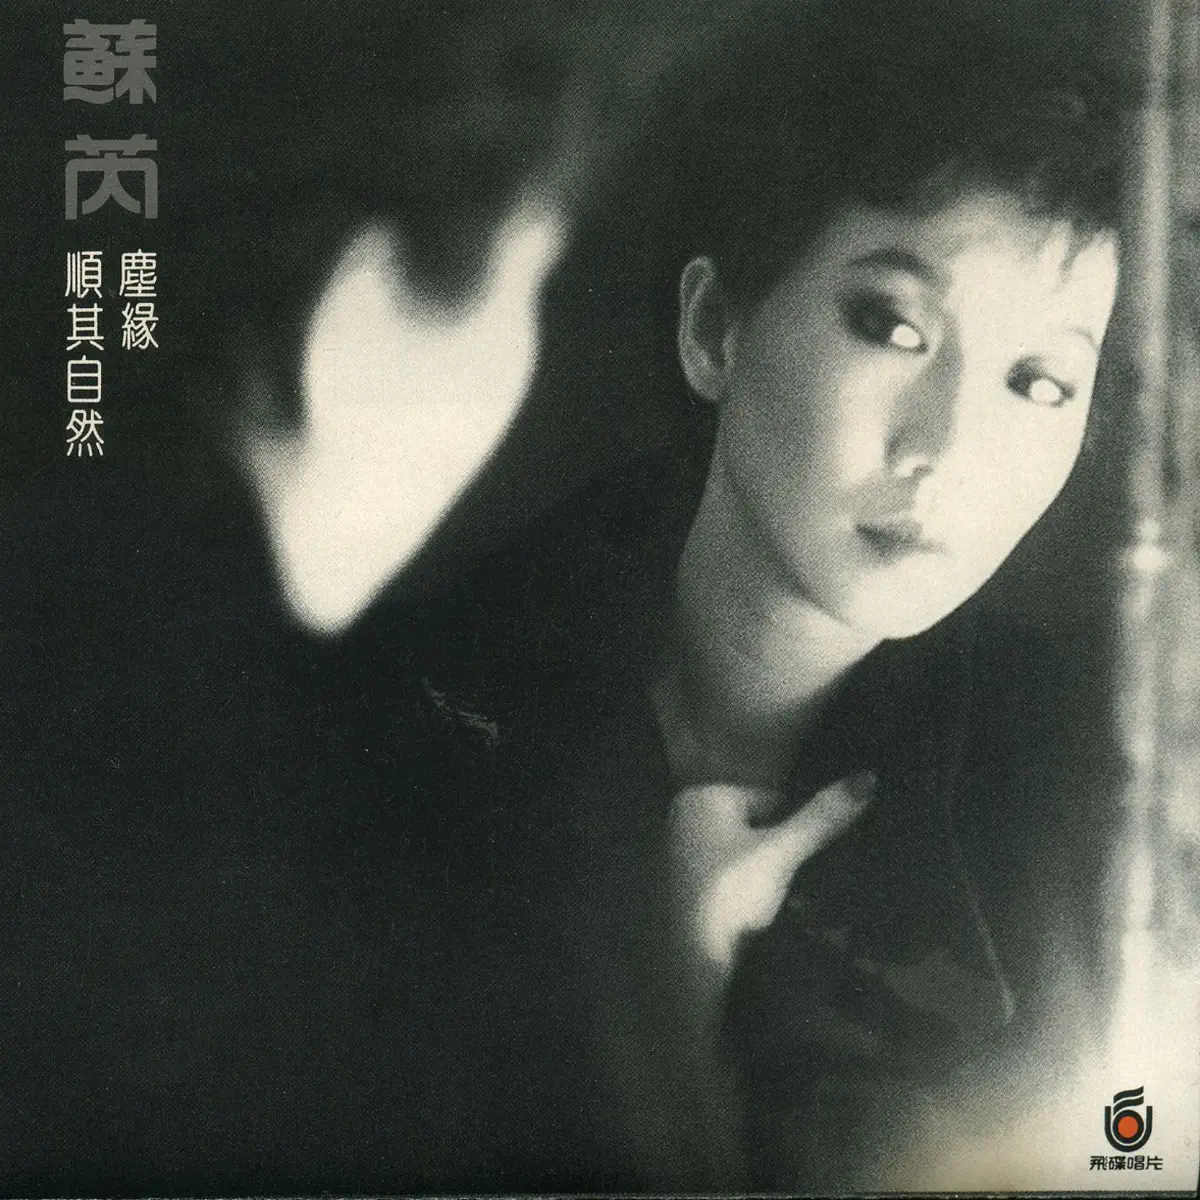 蘇芮 - 蘇芮III: 塵緣 (1989) [iTunes Plus AAC M4A]-新房子